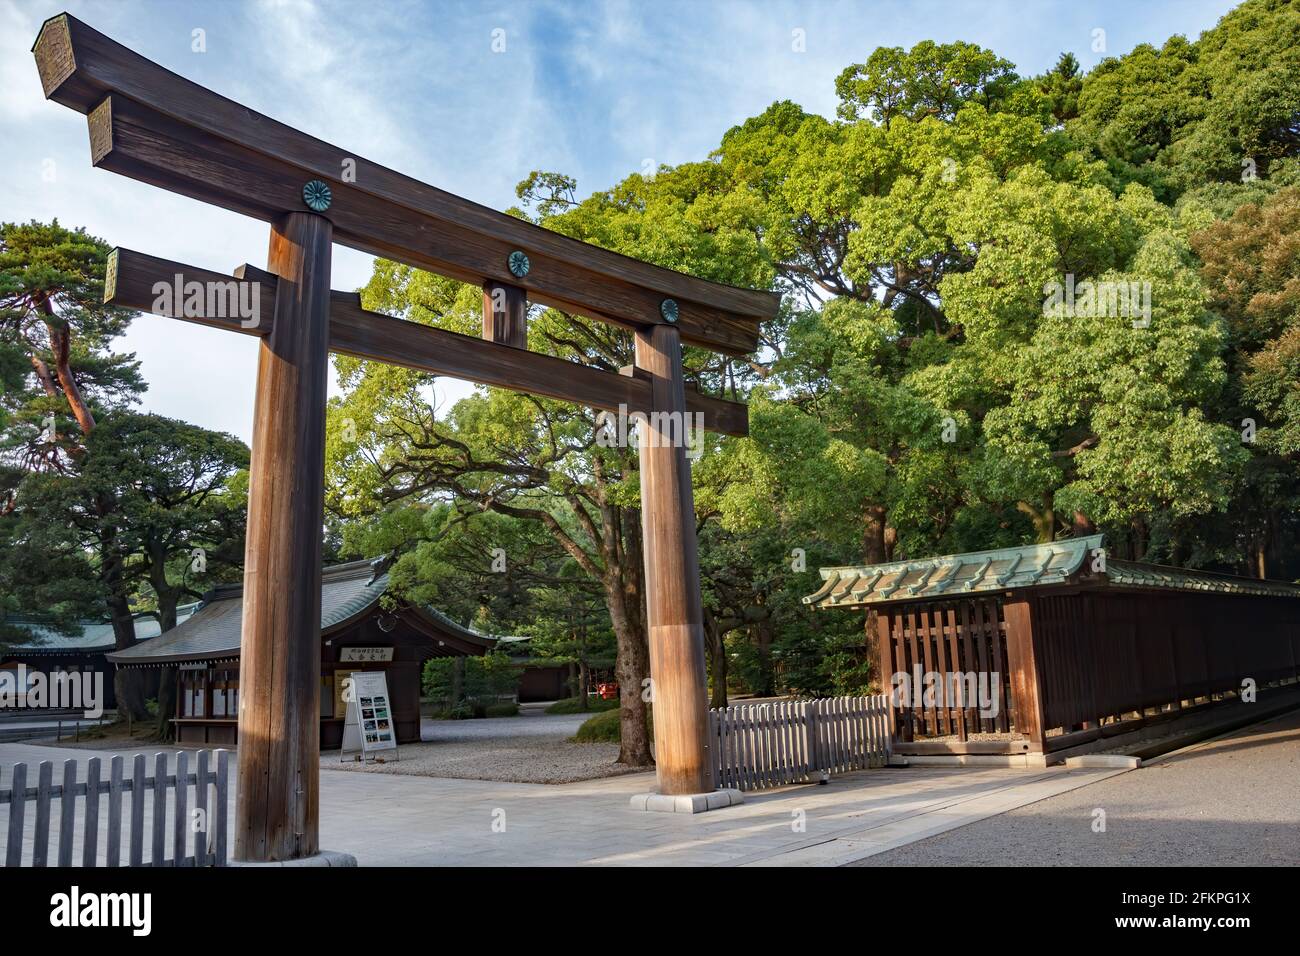 Temple Meiji à Tokyo, Japon. Torii du sanctuaire Meiji Jingu dans le centre de Tokyo (Shibuya), Japon. Meiji Jingu Shrin est le sanctuaire Shinto et le plus populaire Banque D'Images